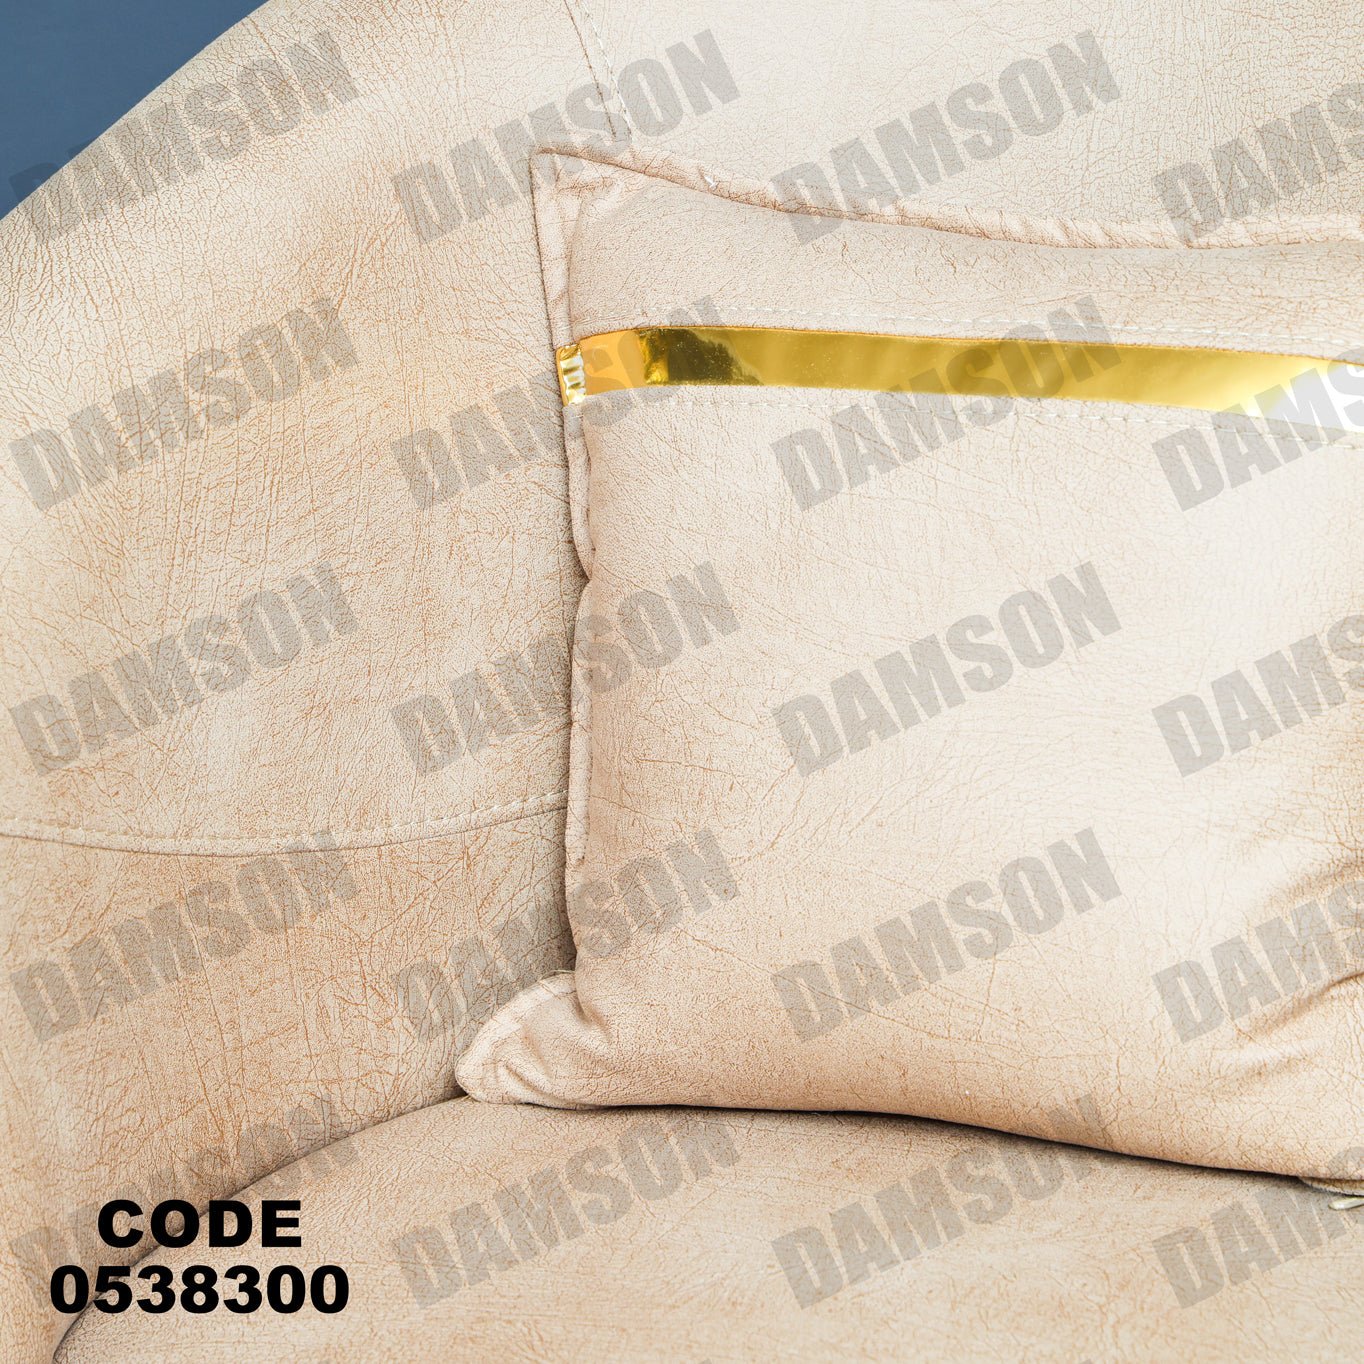 فوتية 1-383 - Damson Furnitureفوتية 1-383